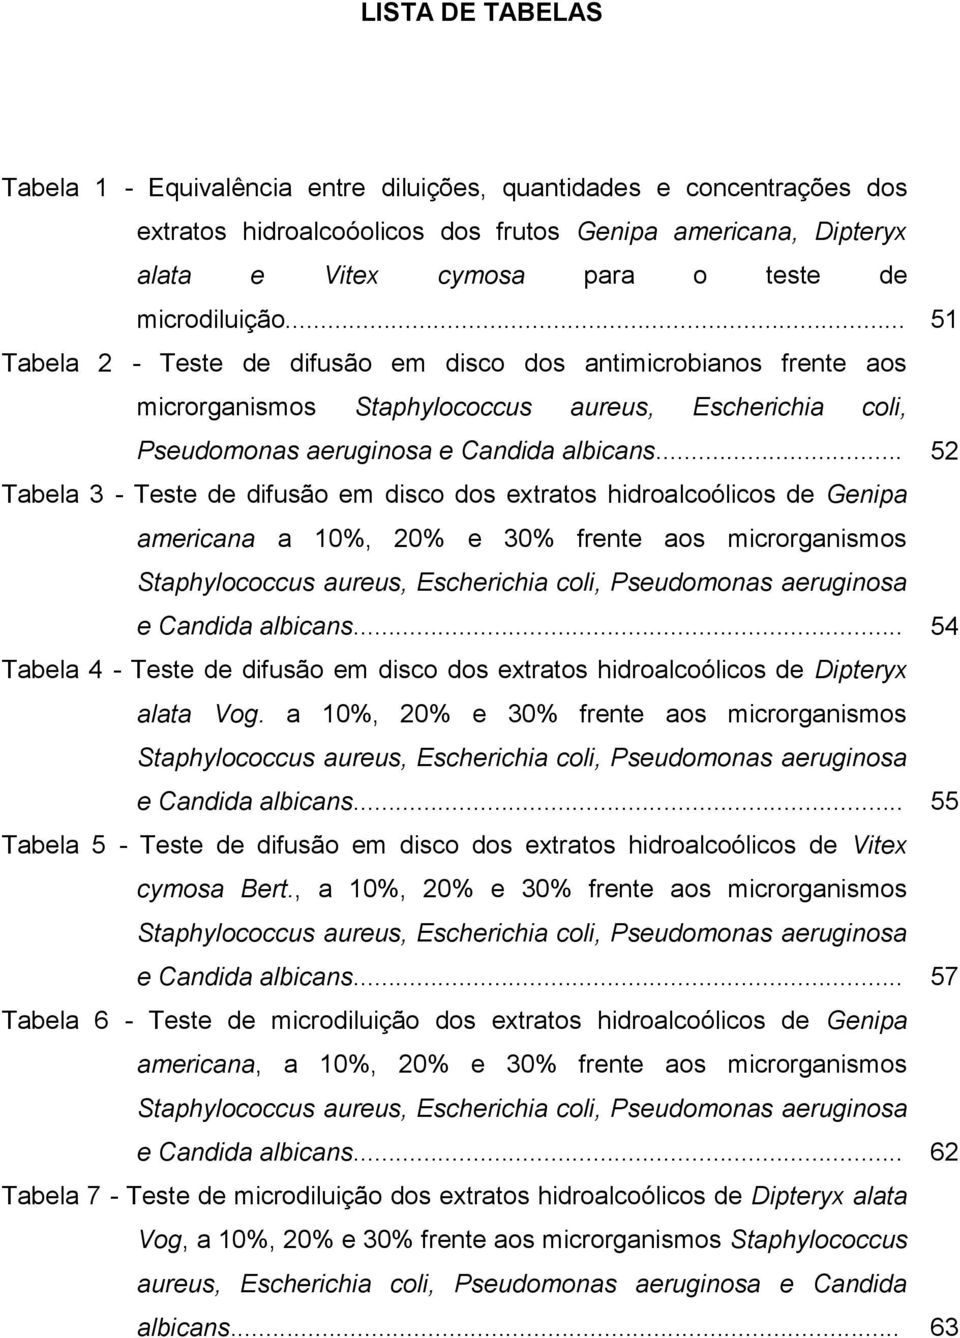 .. 52 Tabela 3 - Teste de difusão em disco dos extratos hidroalcoólicos de Genipa americana a 10%, 20% e 30% frente aos microrganismos Staphylococcus aureus, Escherichia coli, Pseudomonas aeruginosa